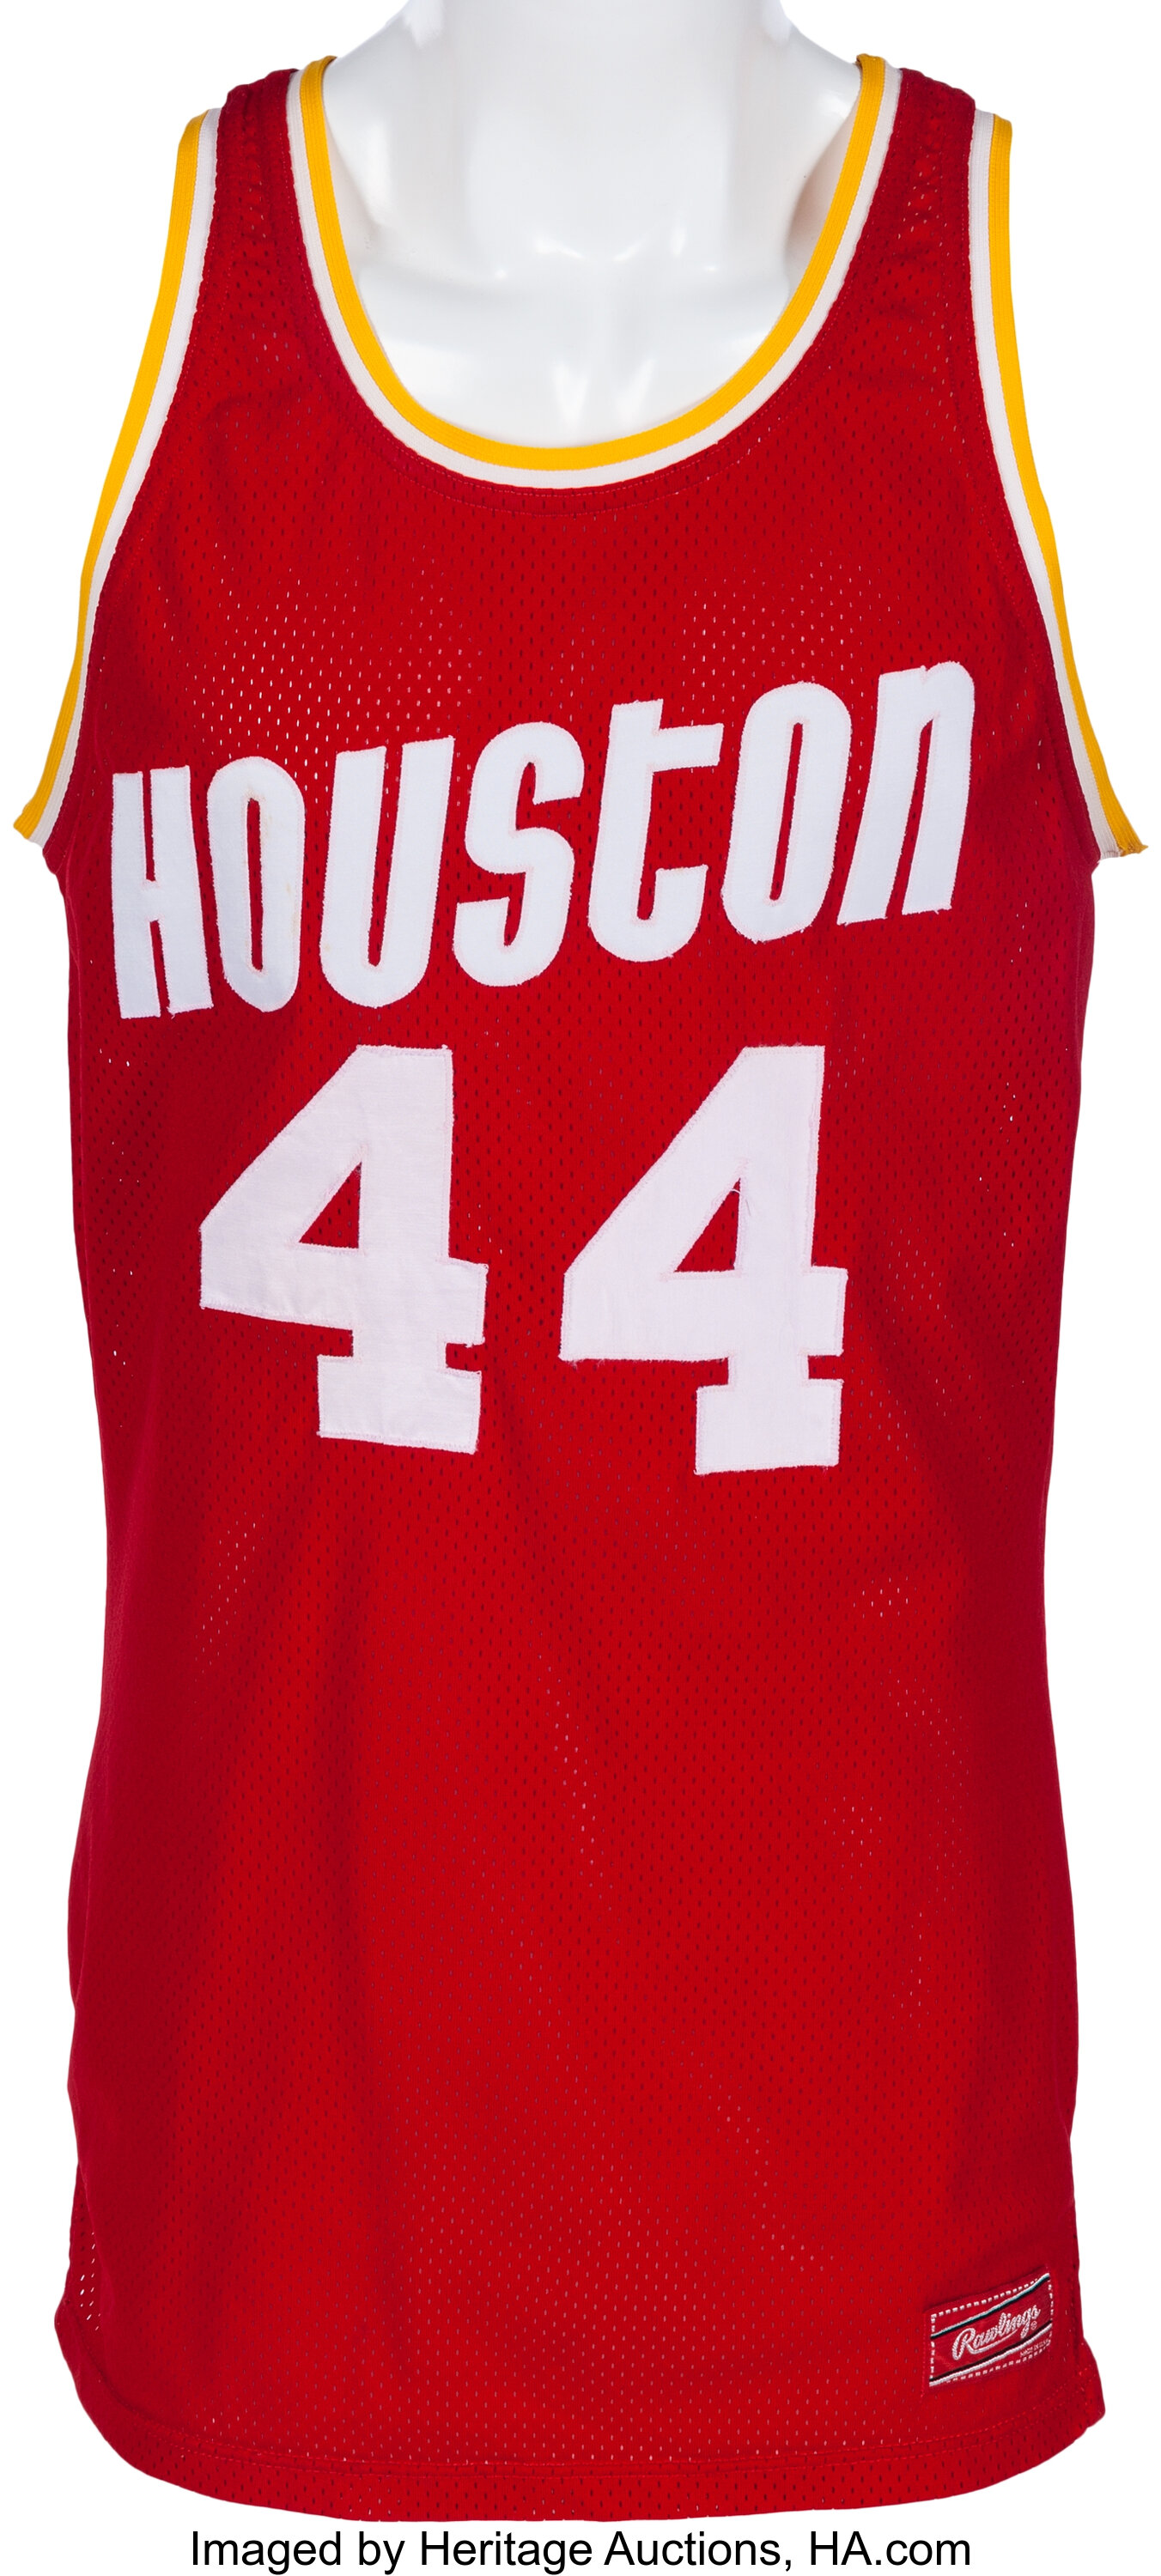 Houston Rockets Jersey History - Basketball Jersey Archive